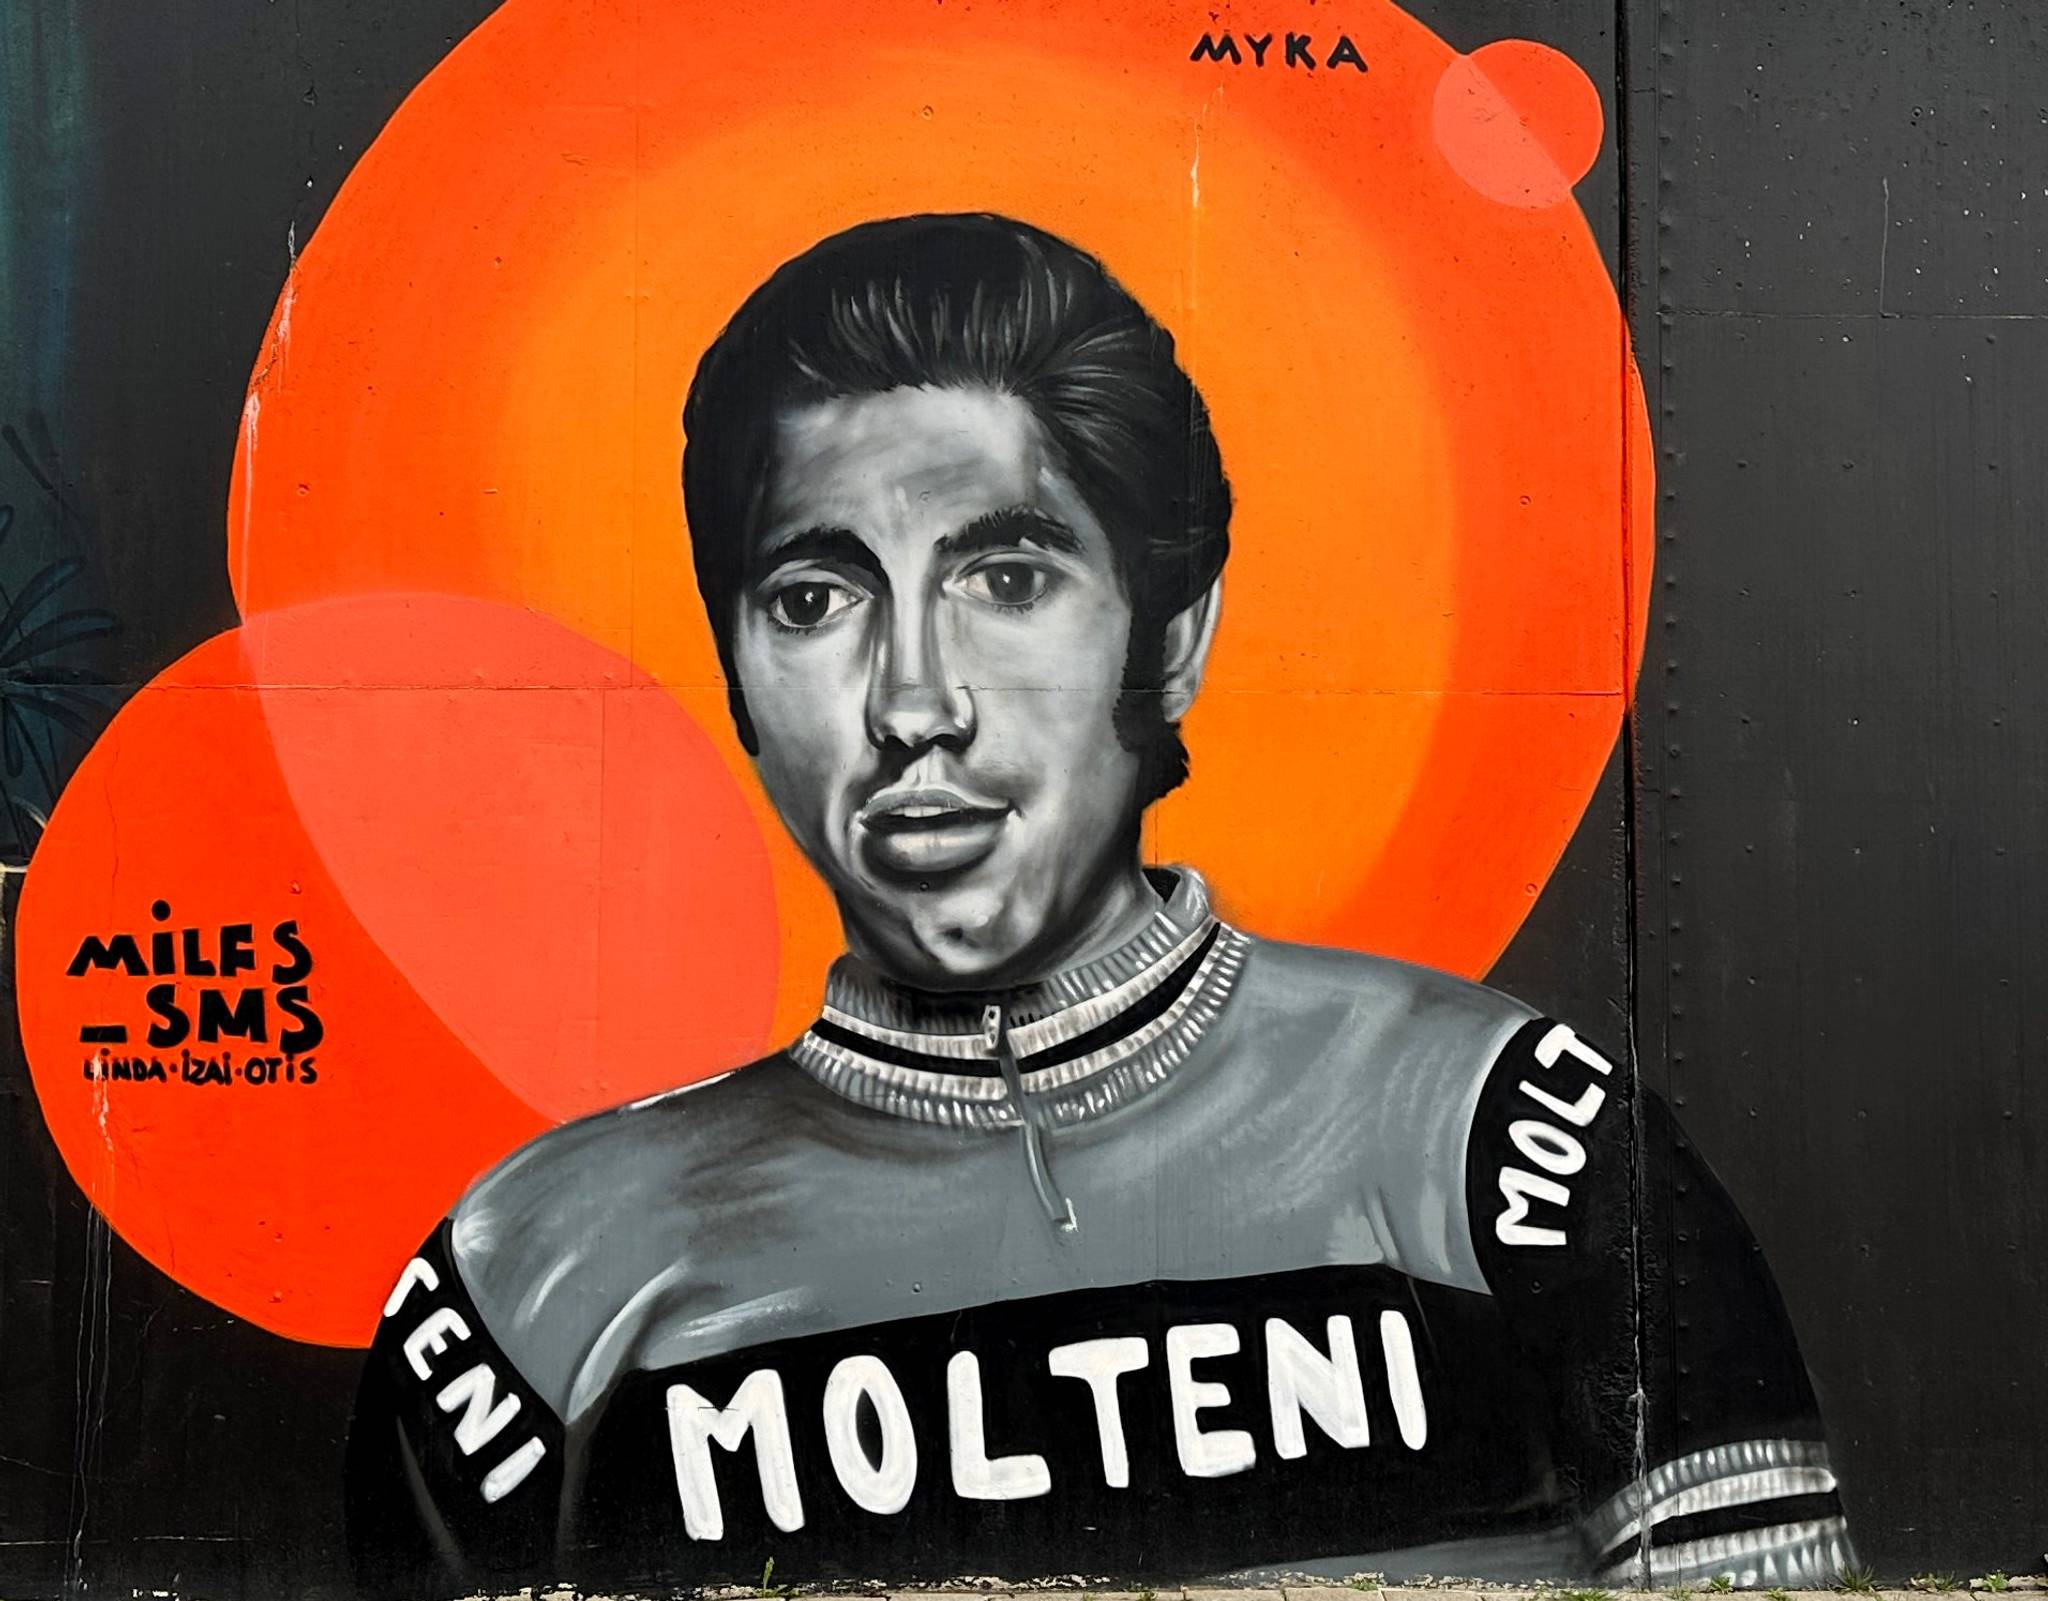 Myka&mdash;Eddy Merckx